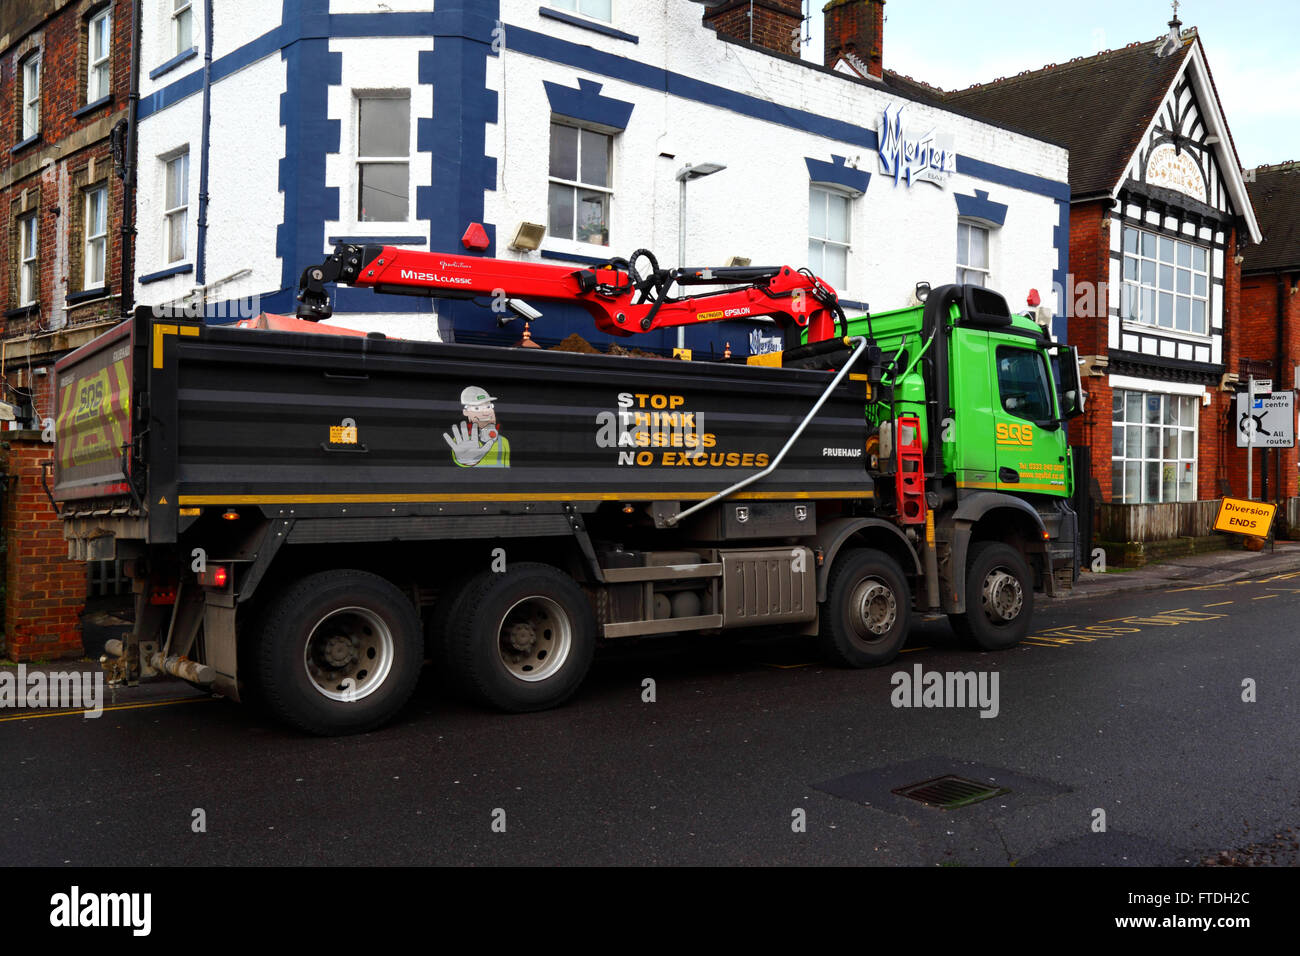 Santé et sécurité STAN (Stop Think Assess No excuses) mnémonique / slogan sur le côté du camion à benne basculante avec grue, Tonbridge, Kent, Royaume-Uni Banque D'Images